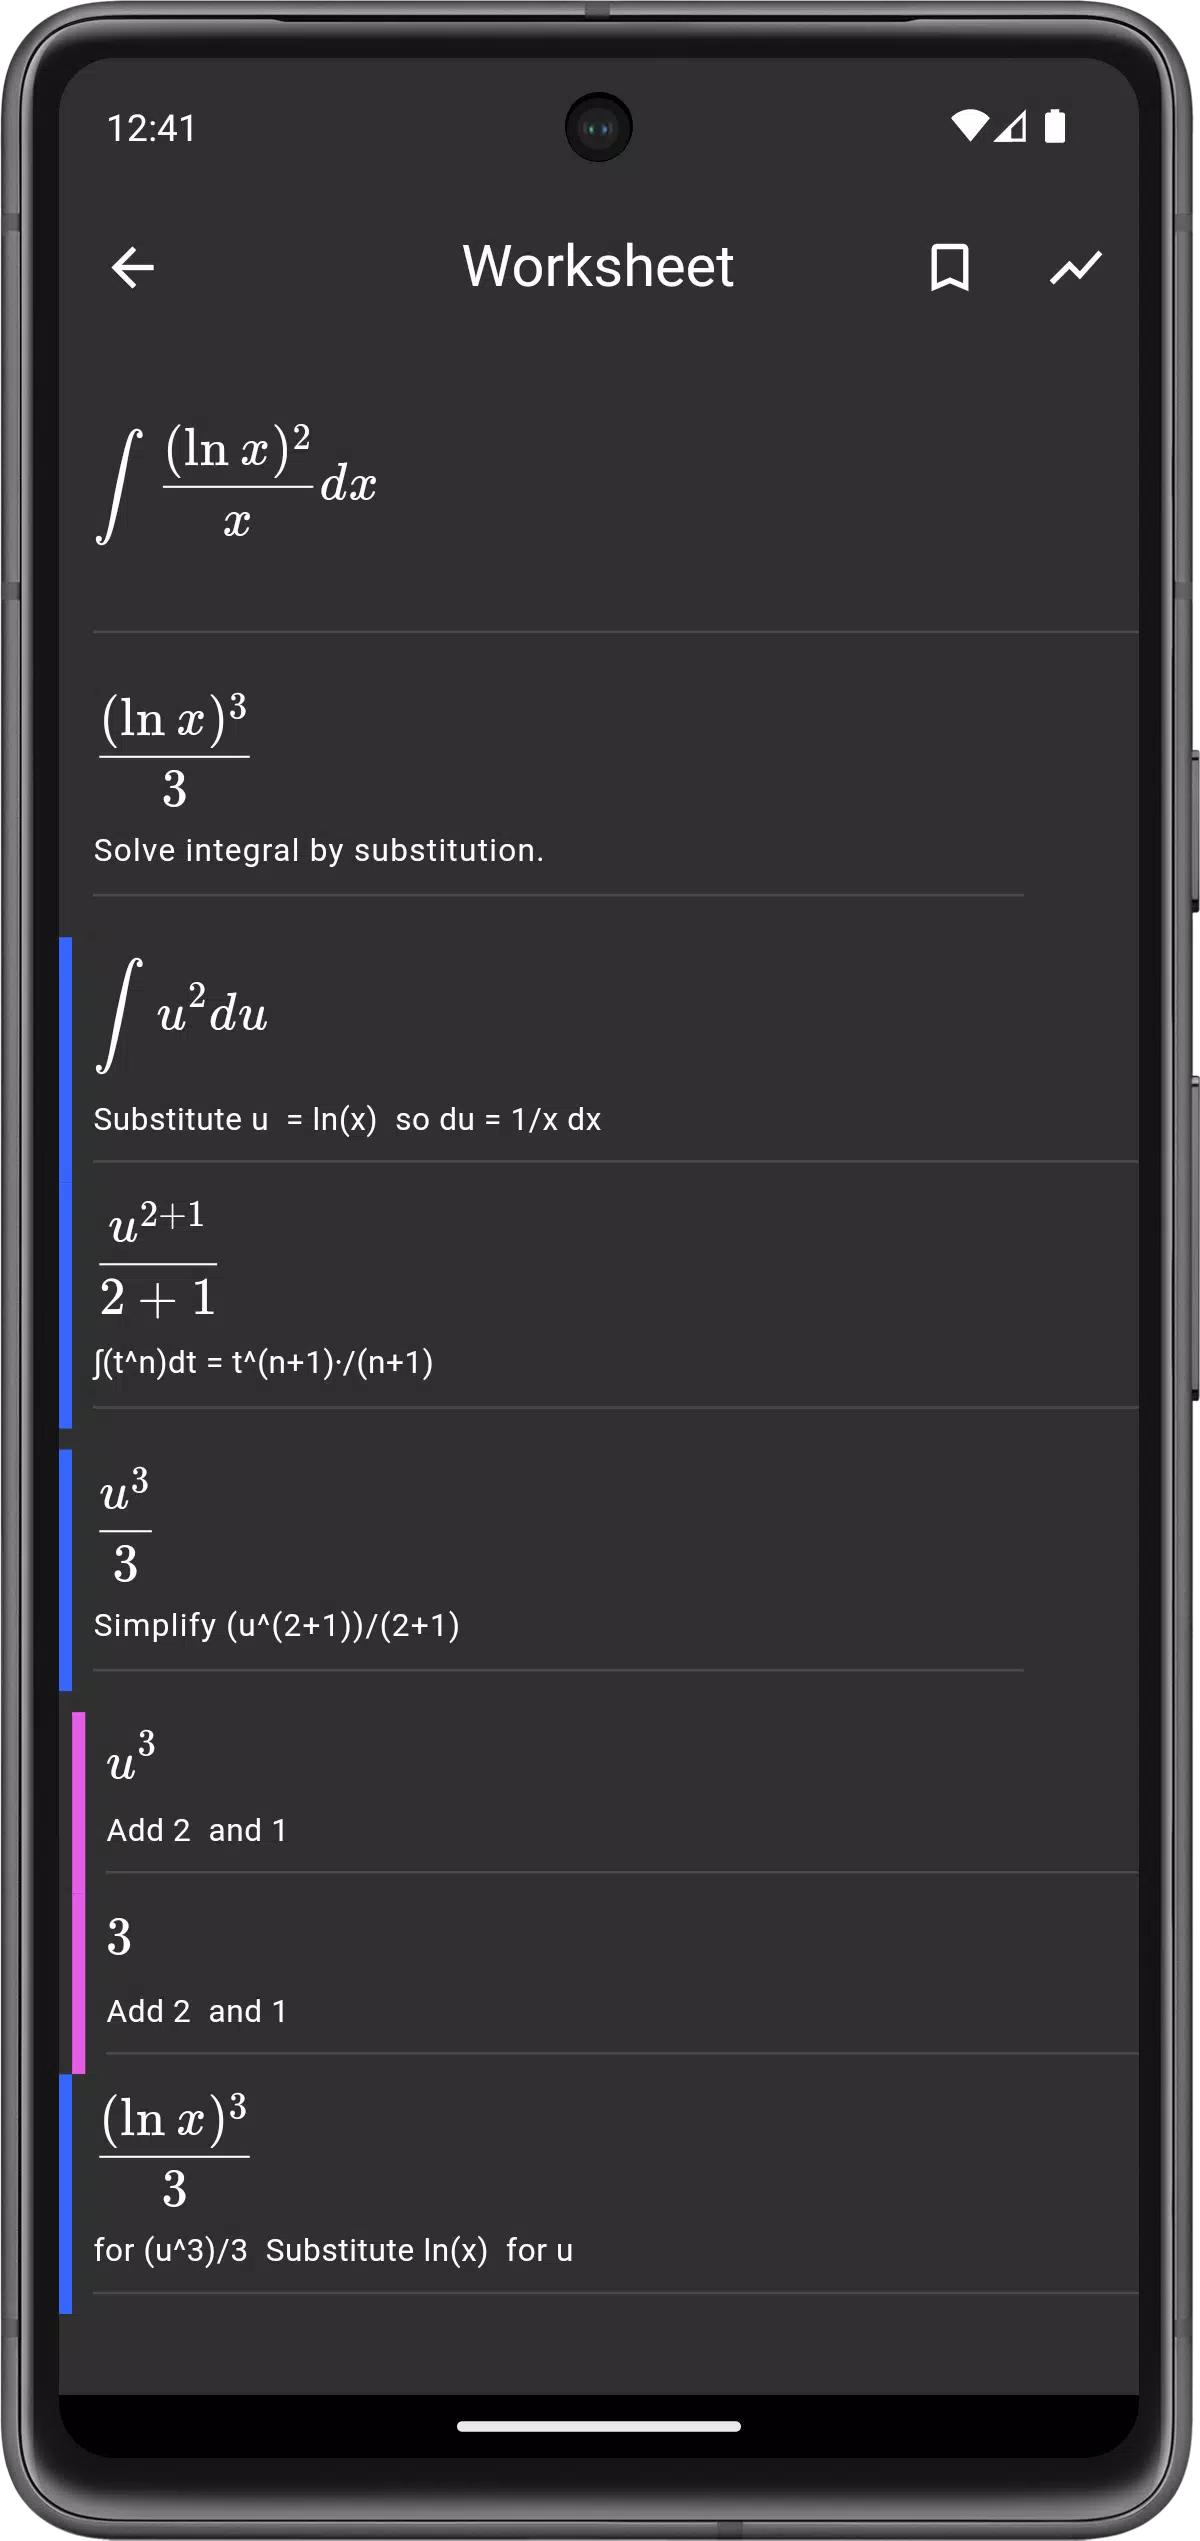 Download do APK de Matematicando Grátis para Android